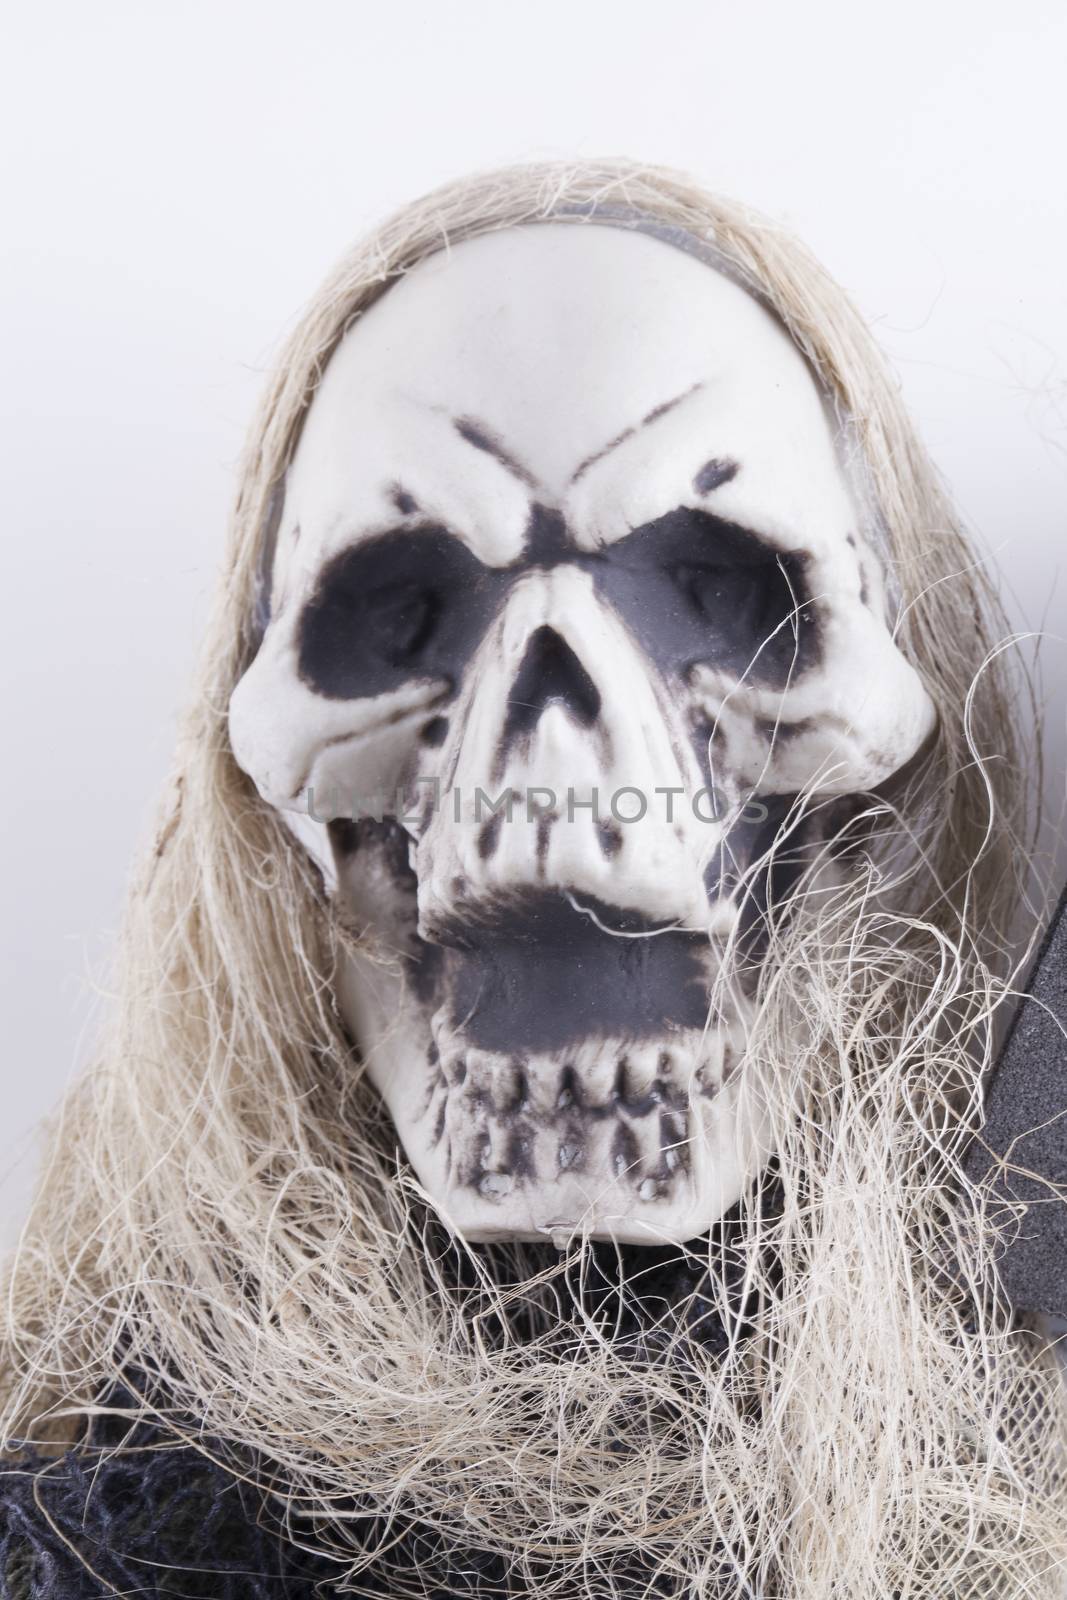 Skull face over white background, vertical image